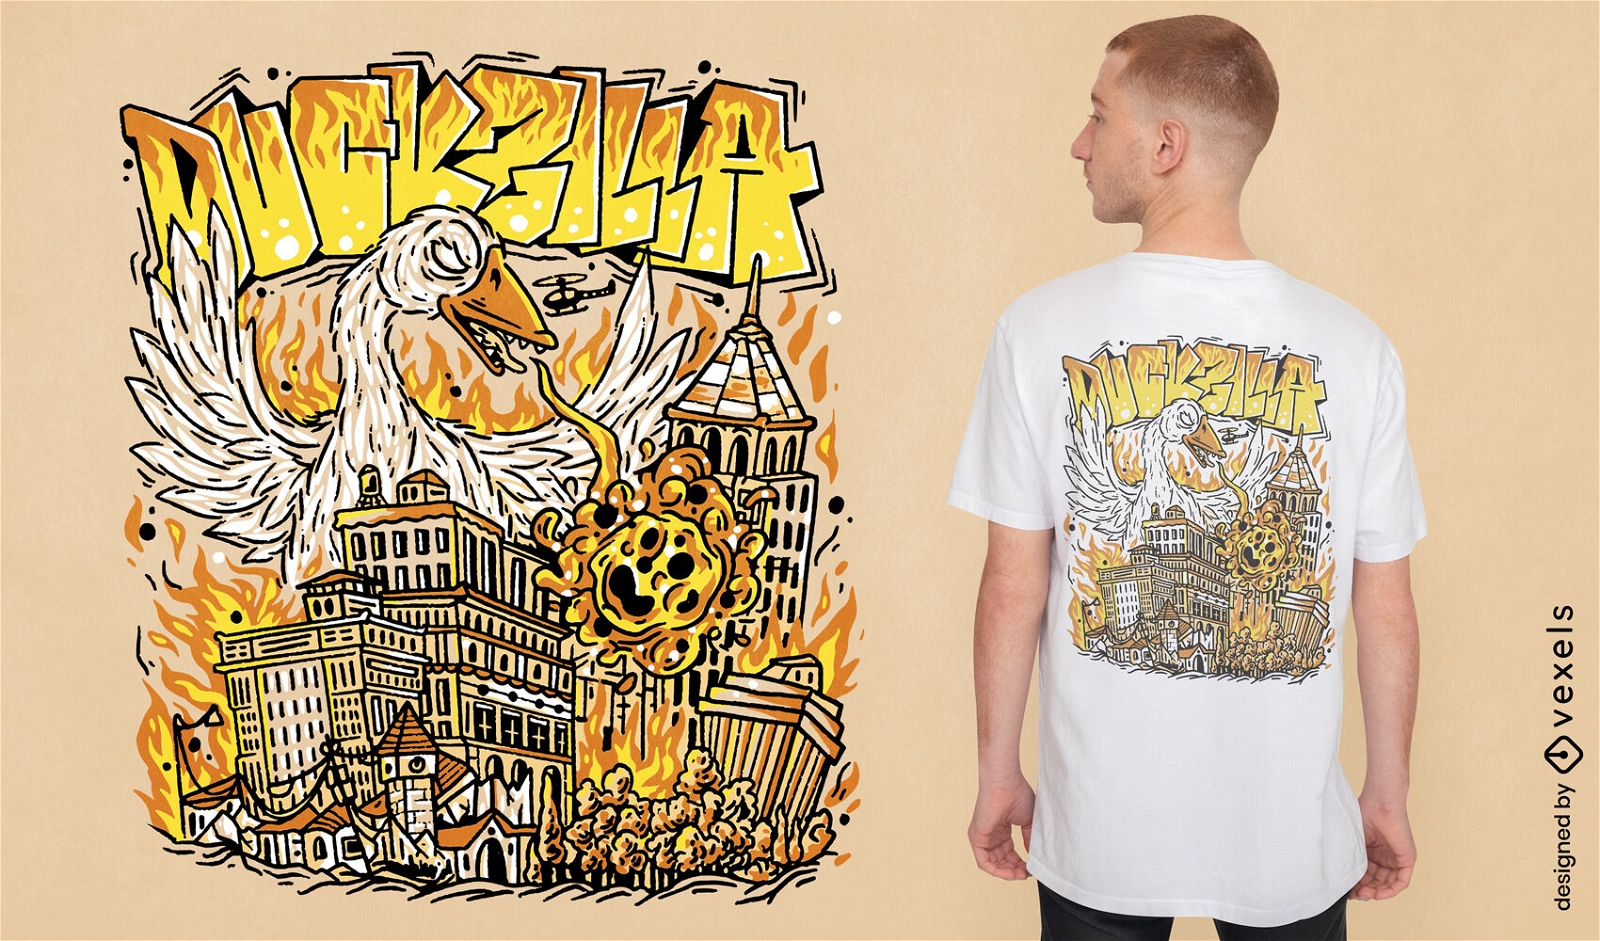 Riesengans greift Stadt-T-Shirt-Design an